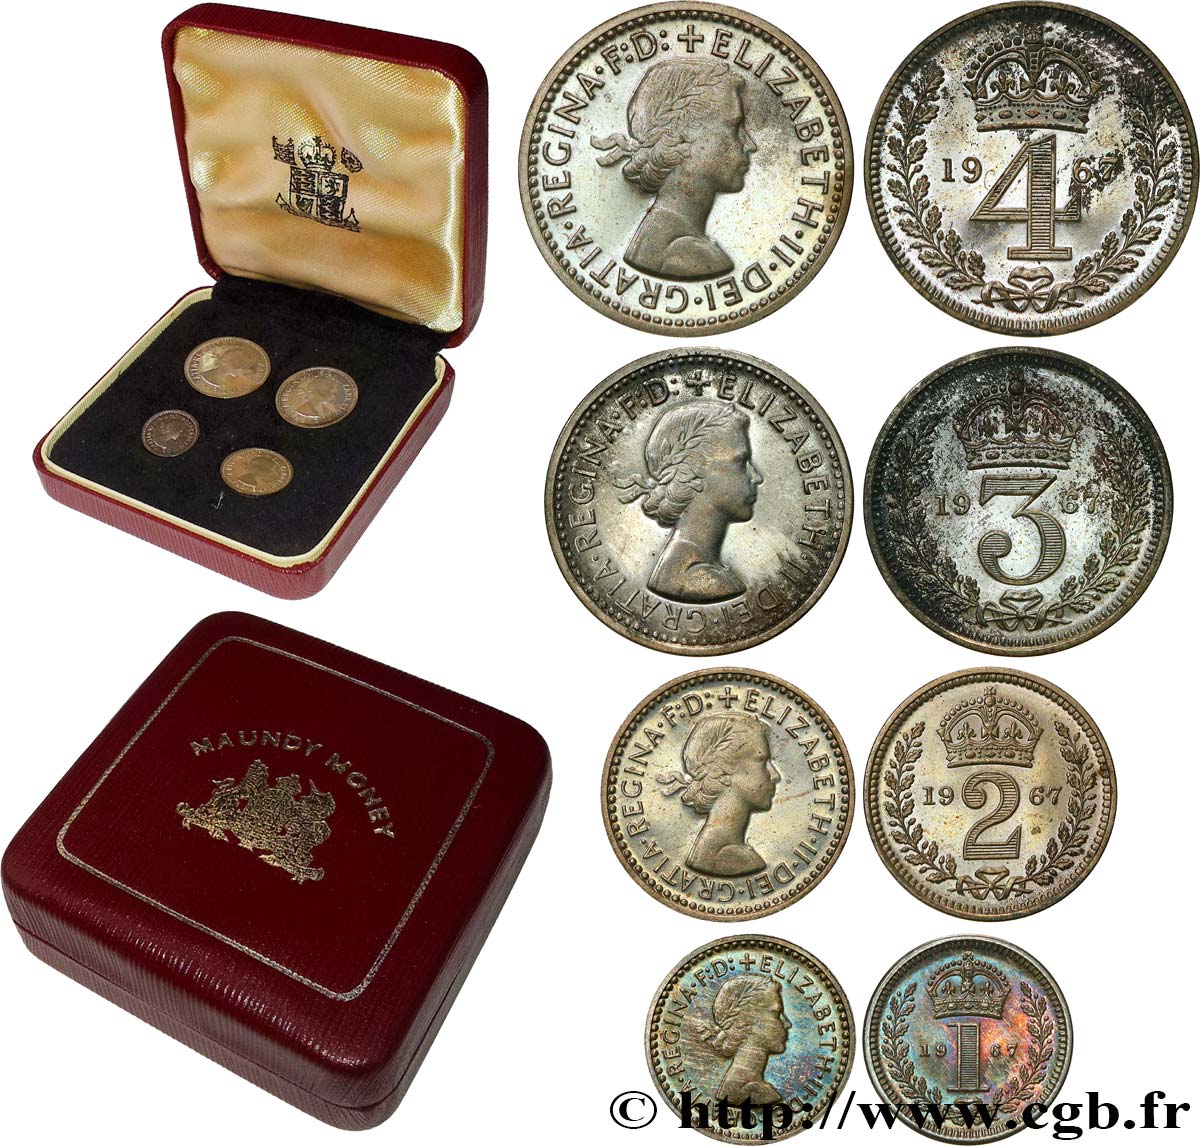 VEREINIGTEN KÖNIGREICH Maundy set - Penny, 2 pence, 3 pence et 4 pence 1967  BU 